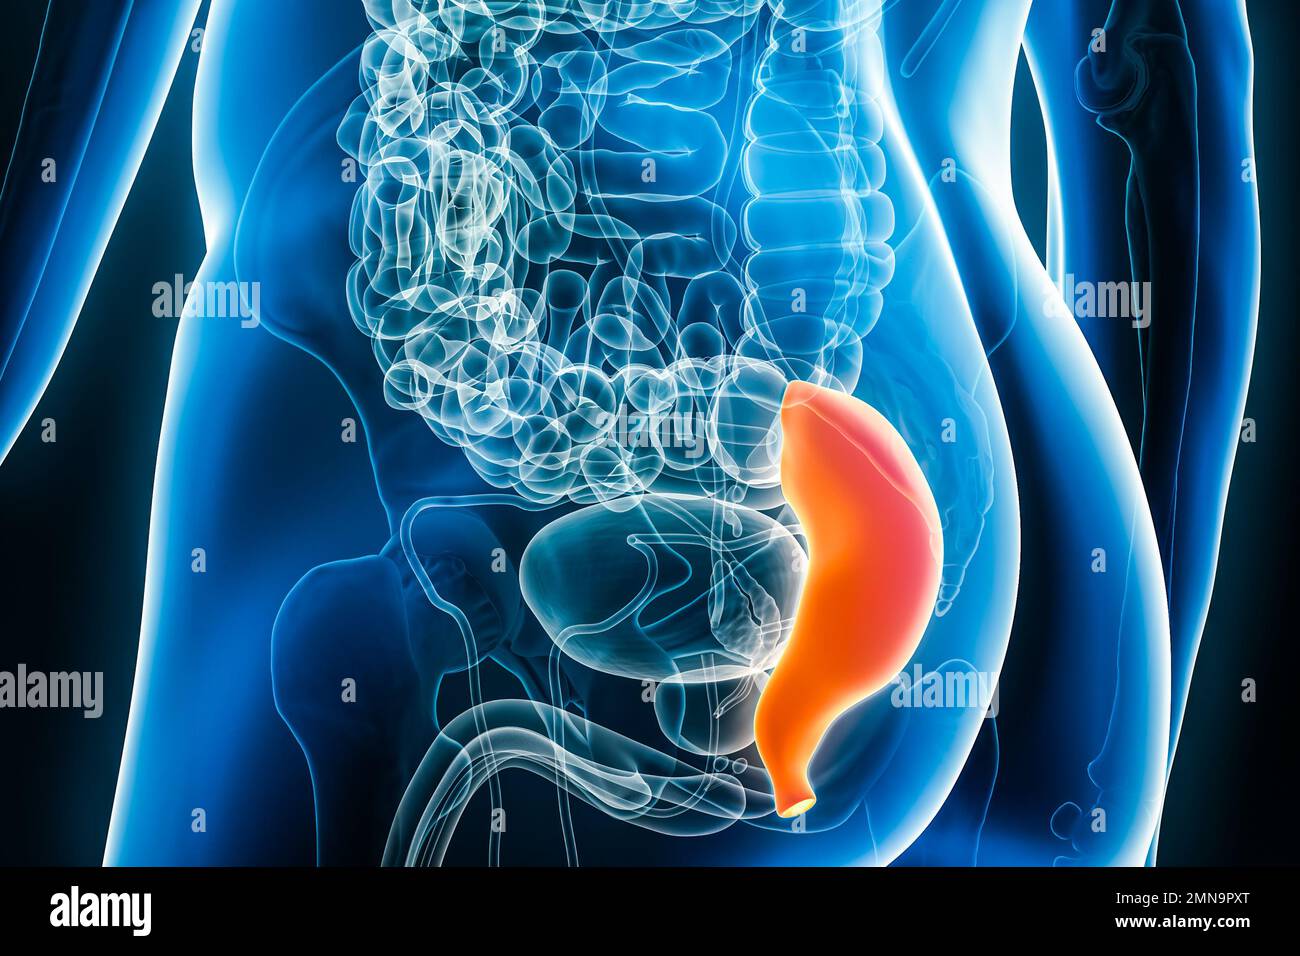 Radiografía del recto, parte del colon o intestino grueso 3D que representa la ilustración con contornos del cuerpo masculino. Anatomía humana, órgano del sistema digestivo, med Foto de stock